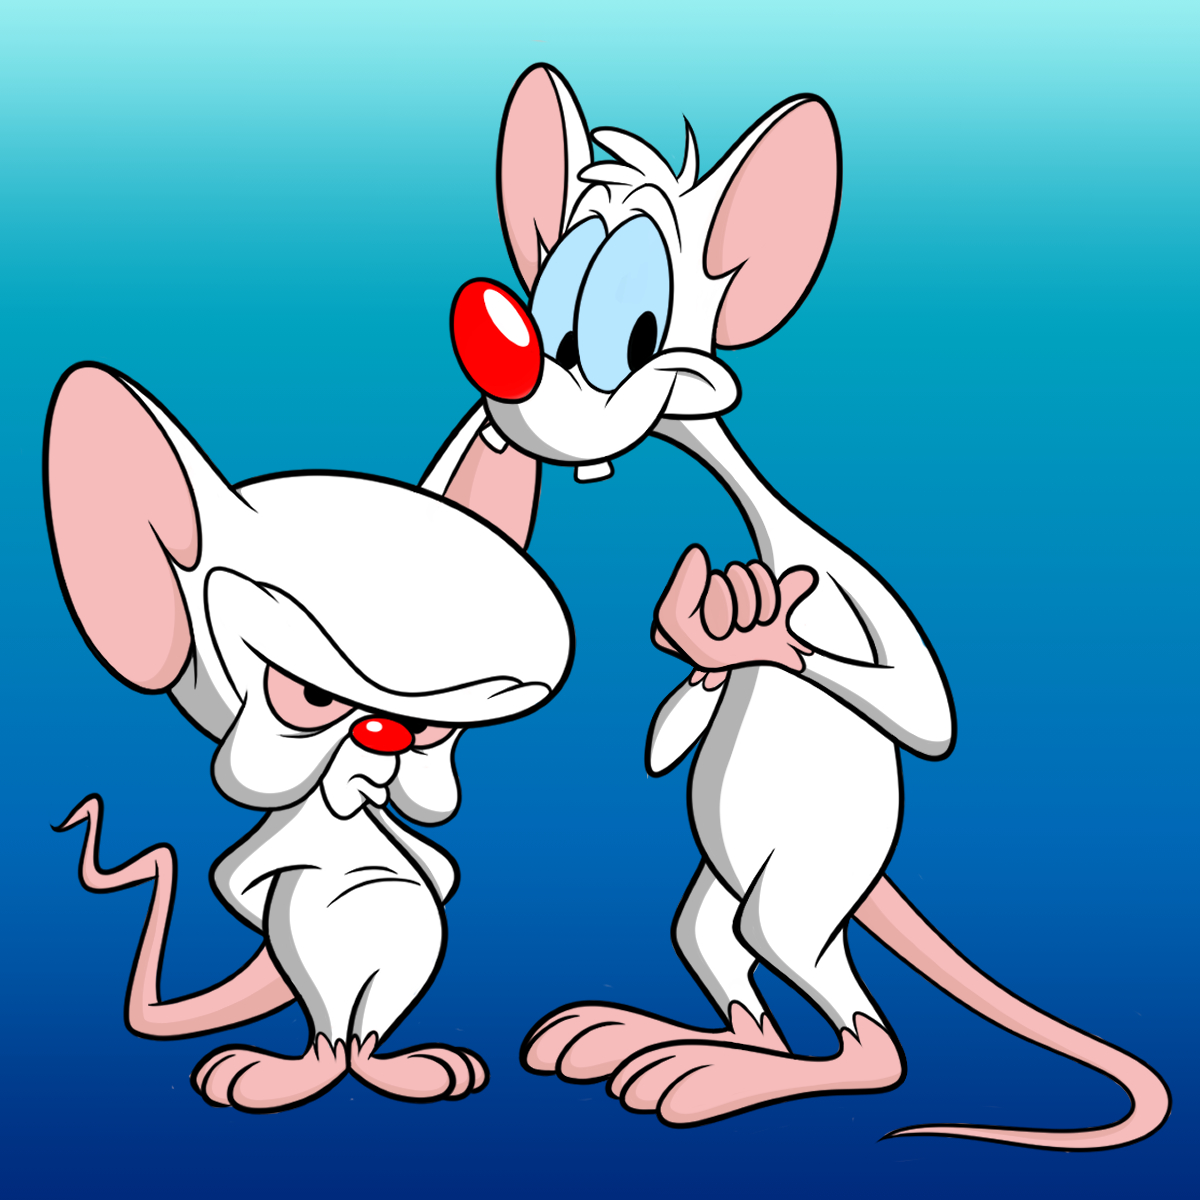 𝙗𝙤𝙤𝙥𝙢𝙖𝙣𝙞𝙖 ブープマニア Pinky Amp Brain 今日の お絵描きは 遺伝子操作された2匹の実験用 ネズミ ピンキーアンドブレイン で す ポイット 最近リブート版の アニメがアメリカのhuluで始まりましたね